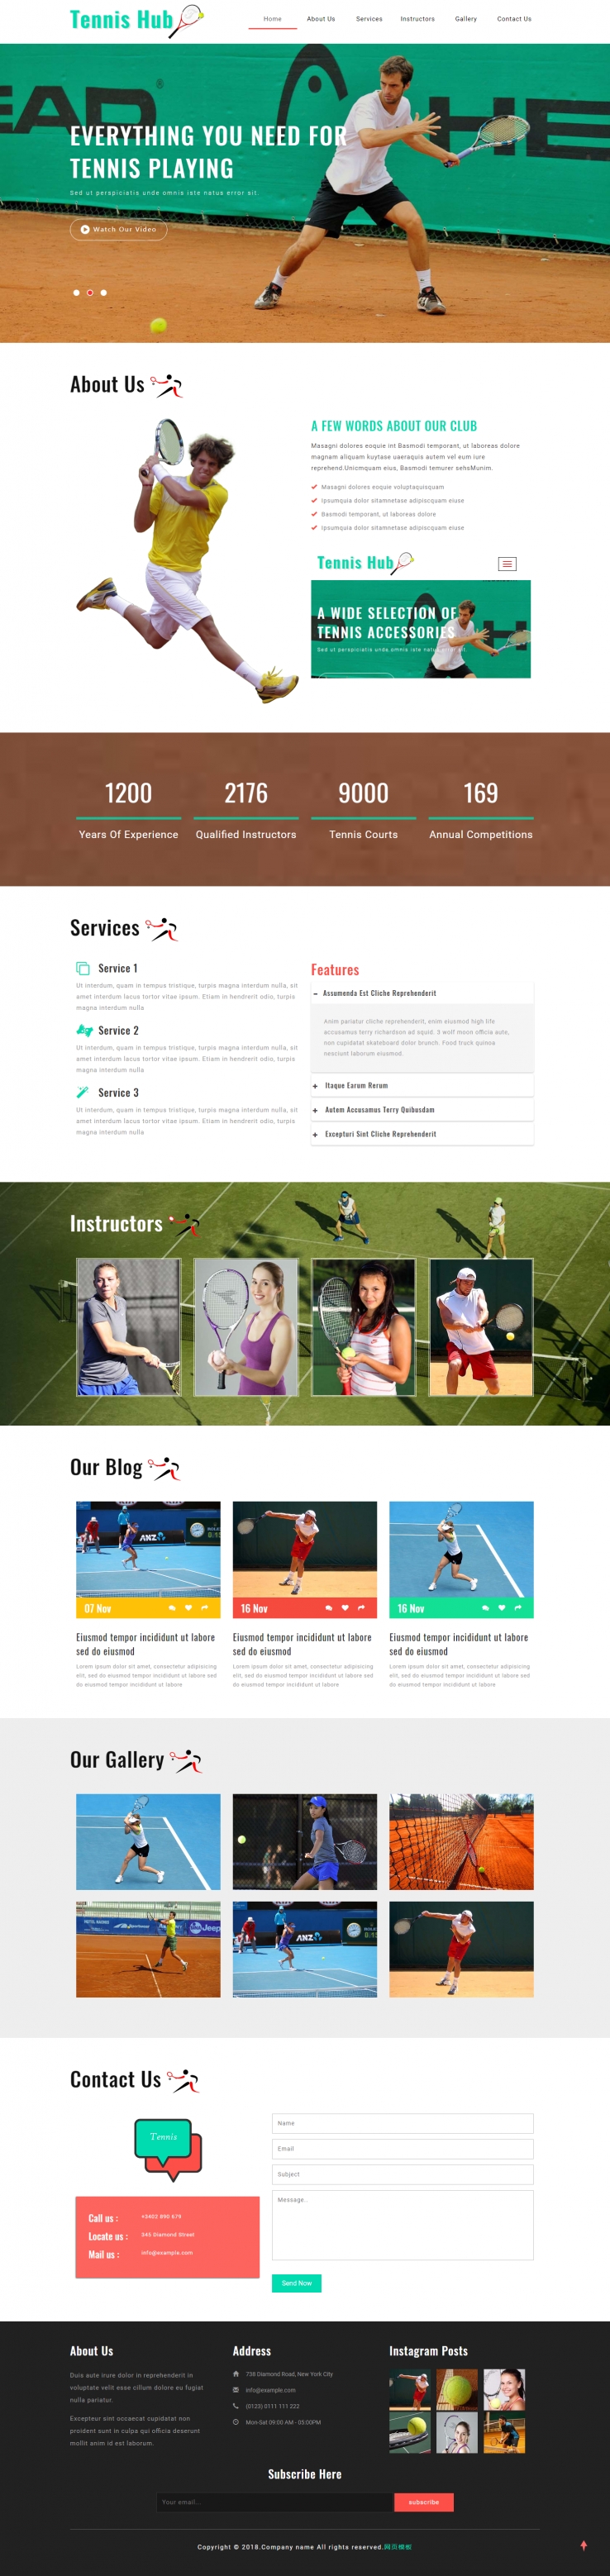 简洁清新的中国网球协会官方网站模板下载